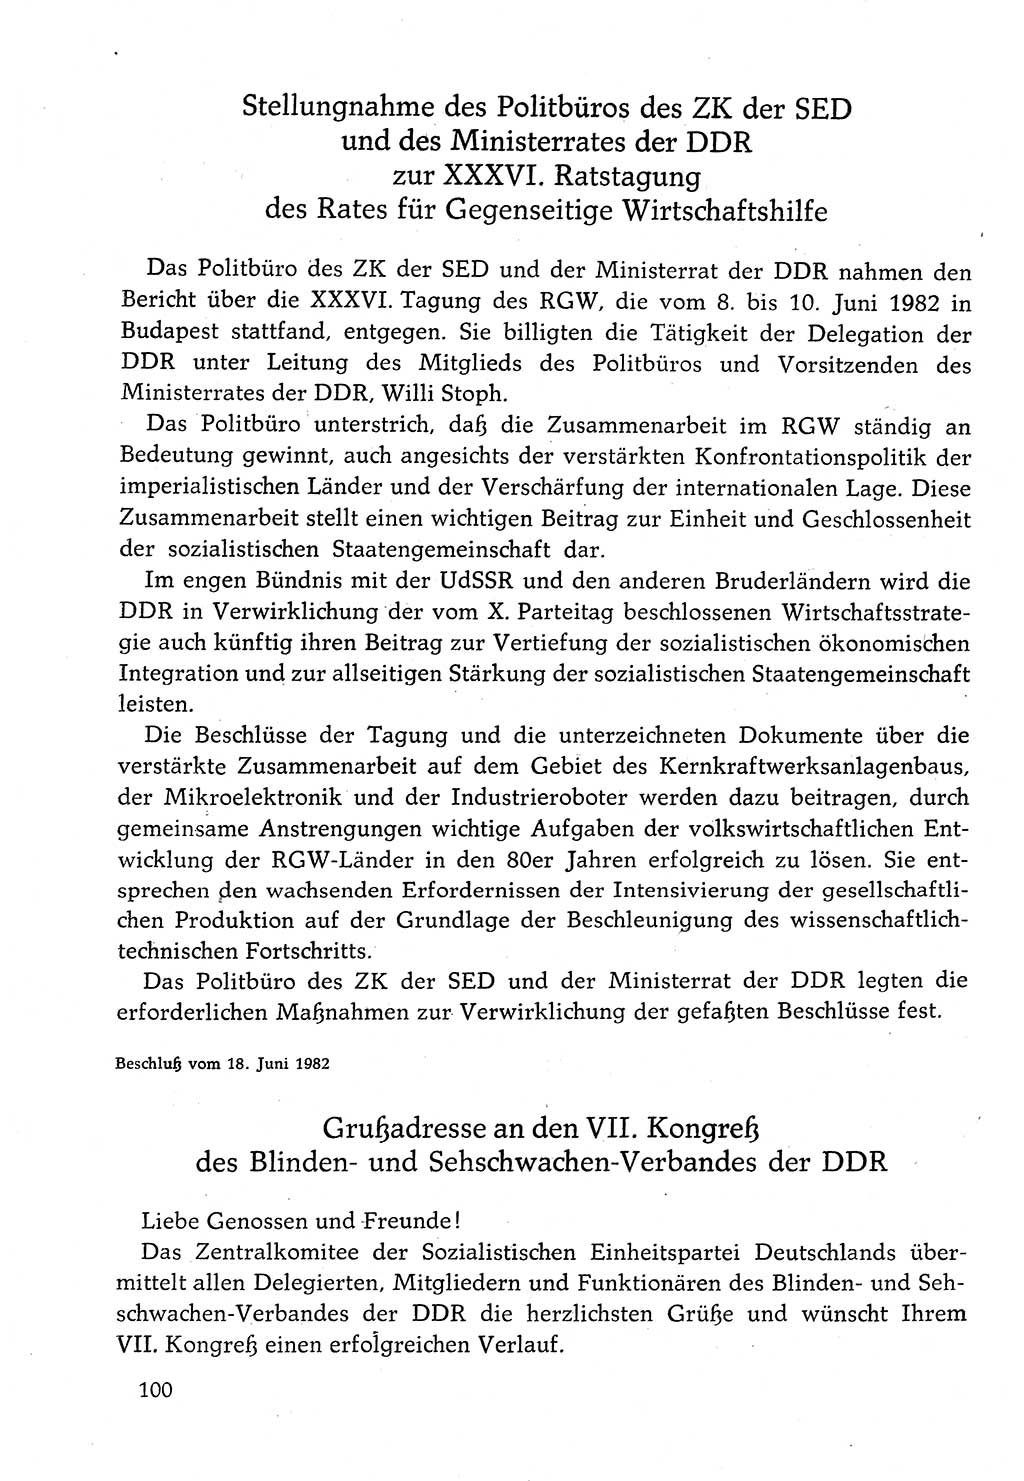 Dokumente der Sozialistischen Einheitspartei Deutschlands (SED) [Deutsche Demokratische Republik (DDR)] 1982-1983, Seite 100 (Dok. SED DDR 1982-1983, S. 100)